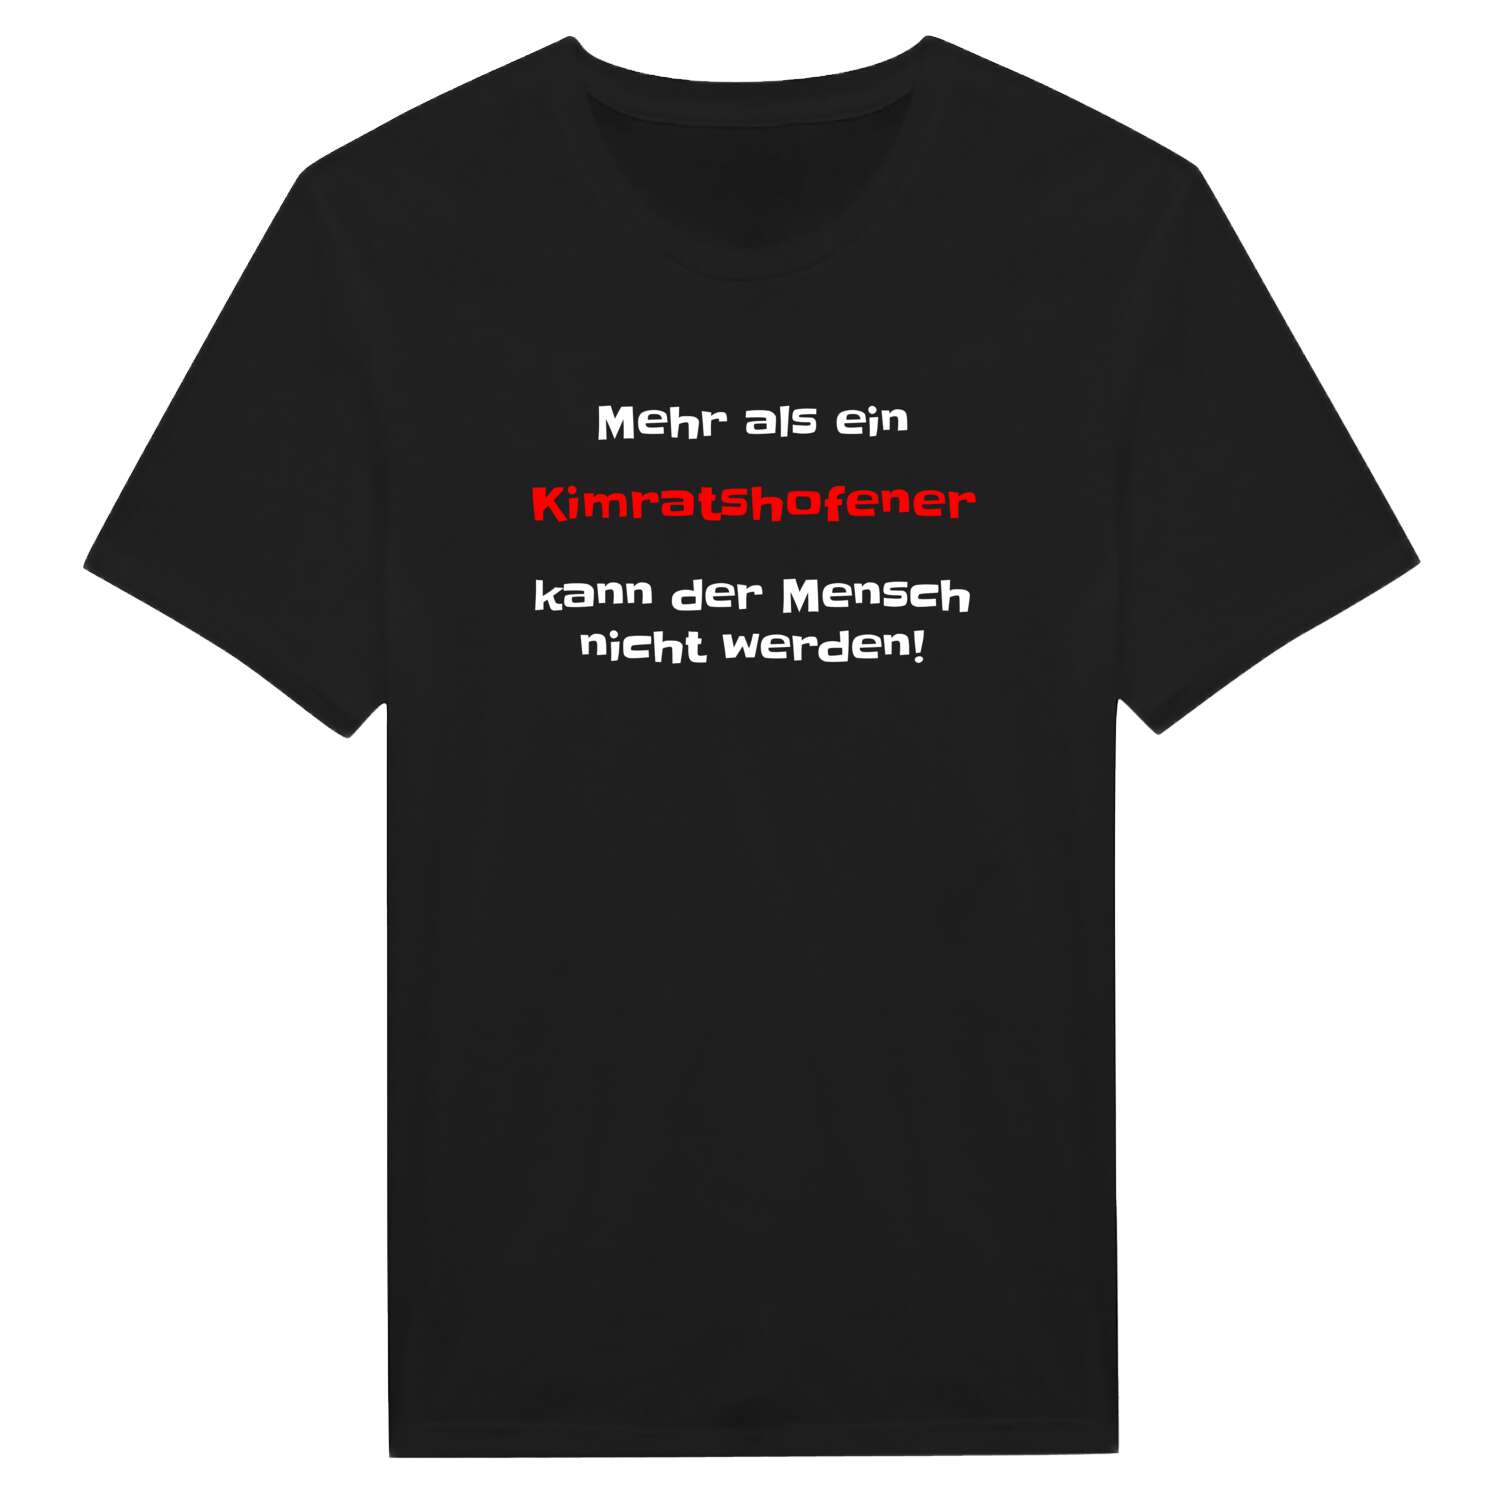 Kimratshofen T-Shirt »Mehr als ein«